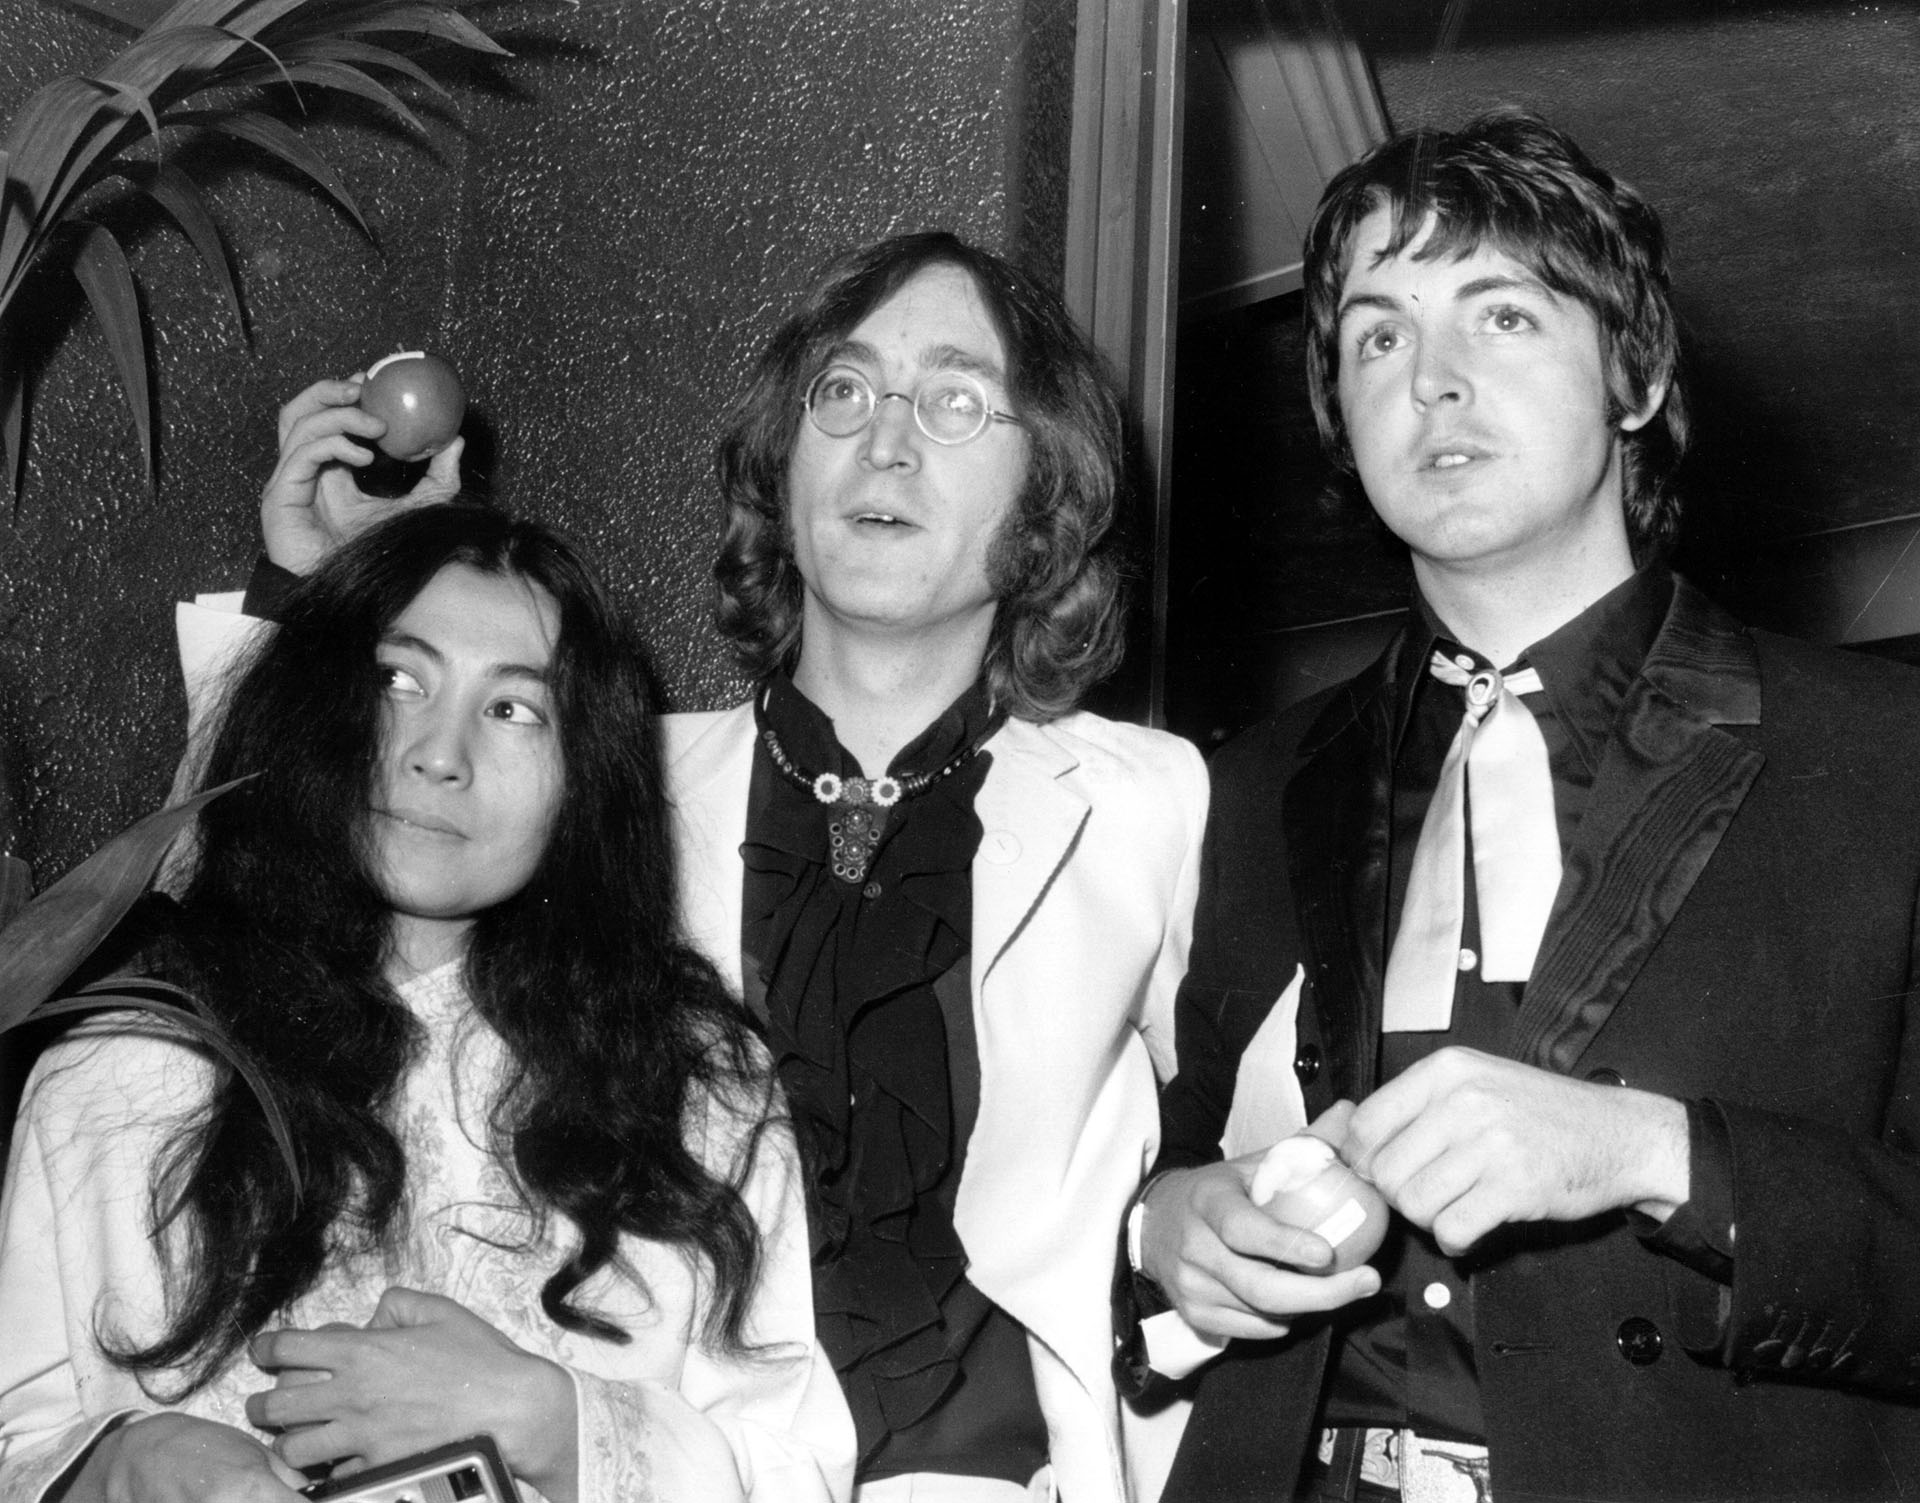 John Lennon y Paul McCartney formaron la más extarodinaria dupla compositiva del último medio siglo. Sus canciones se convirtieron en clásicos instantáneos. Las relaciones entre ellos fueron convulsionadas y pasaron por diferentes estadios en especial durante los setenta. (Photo by Michael Webb/Keystone/Getty Images)